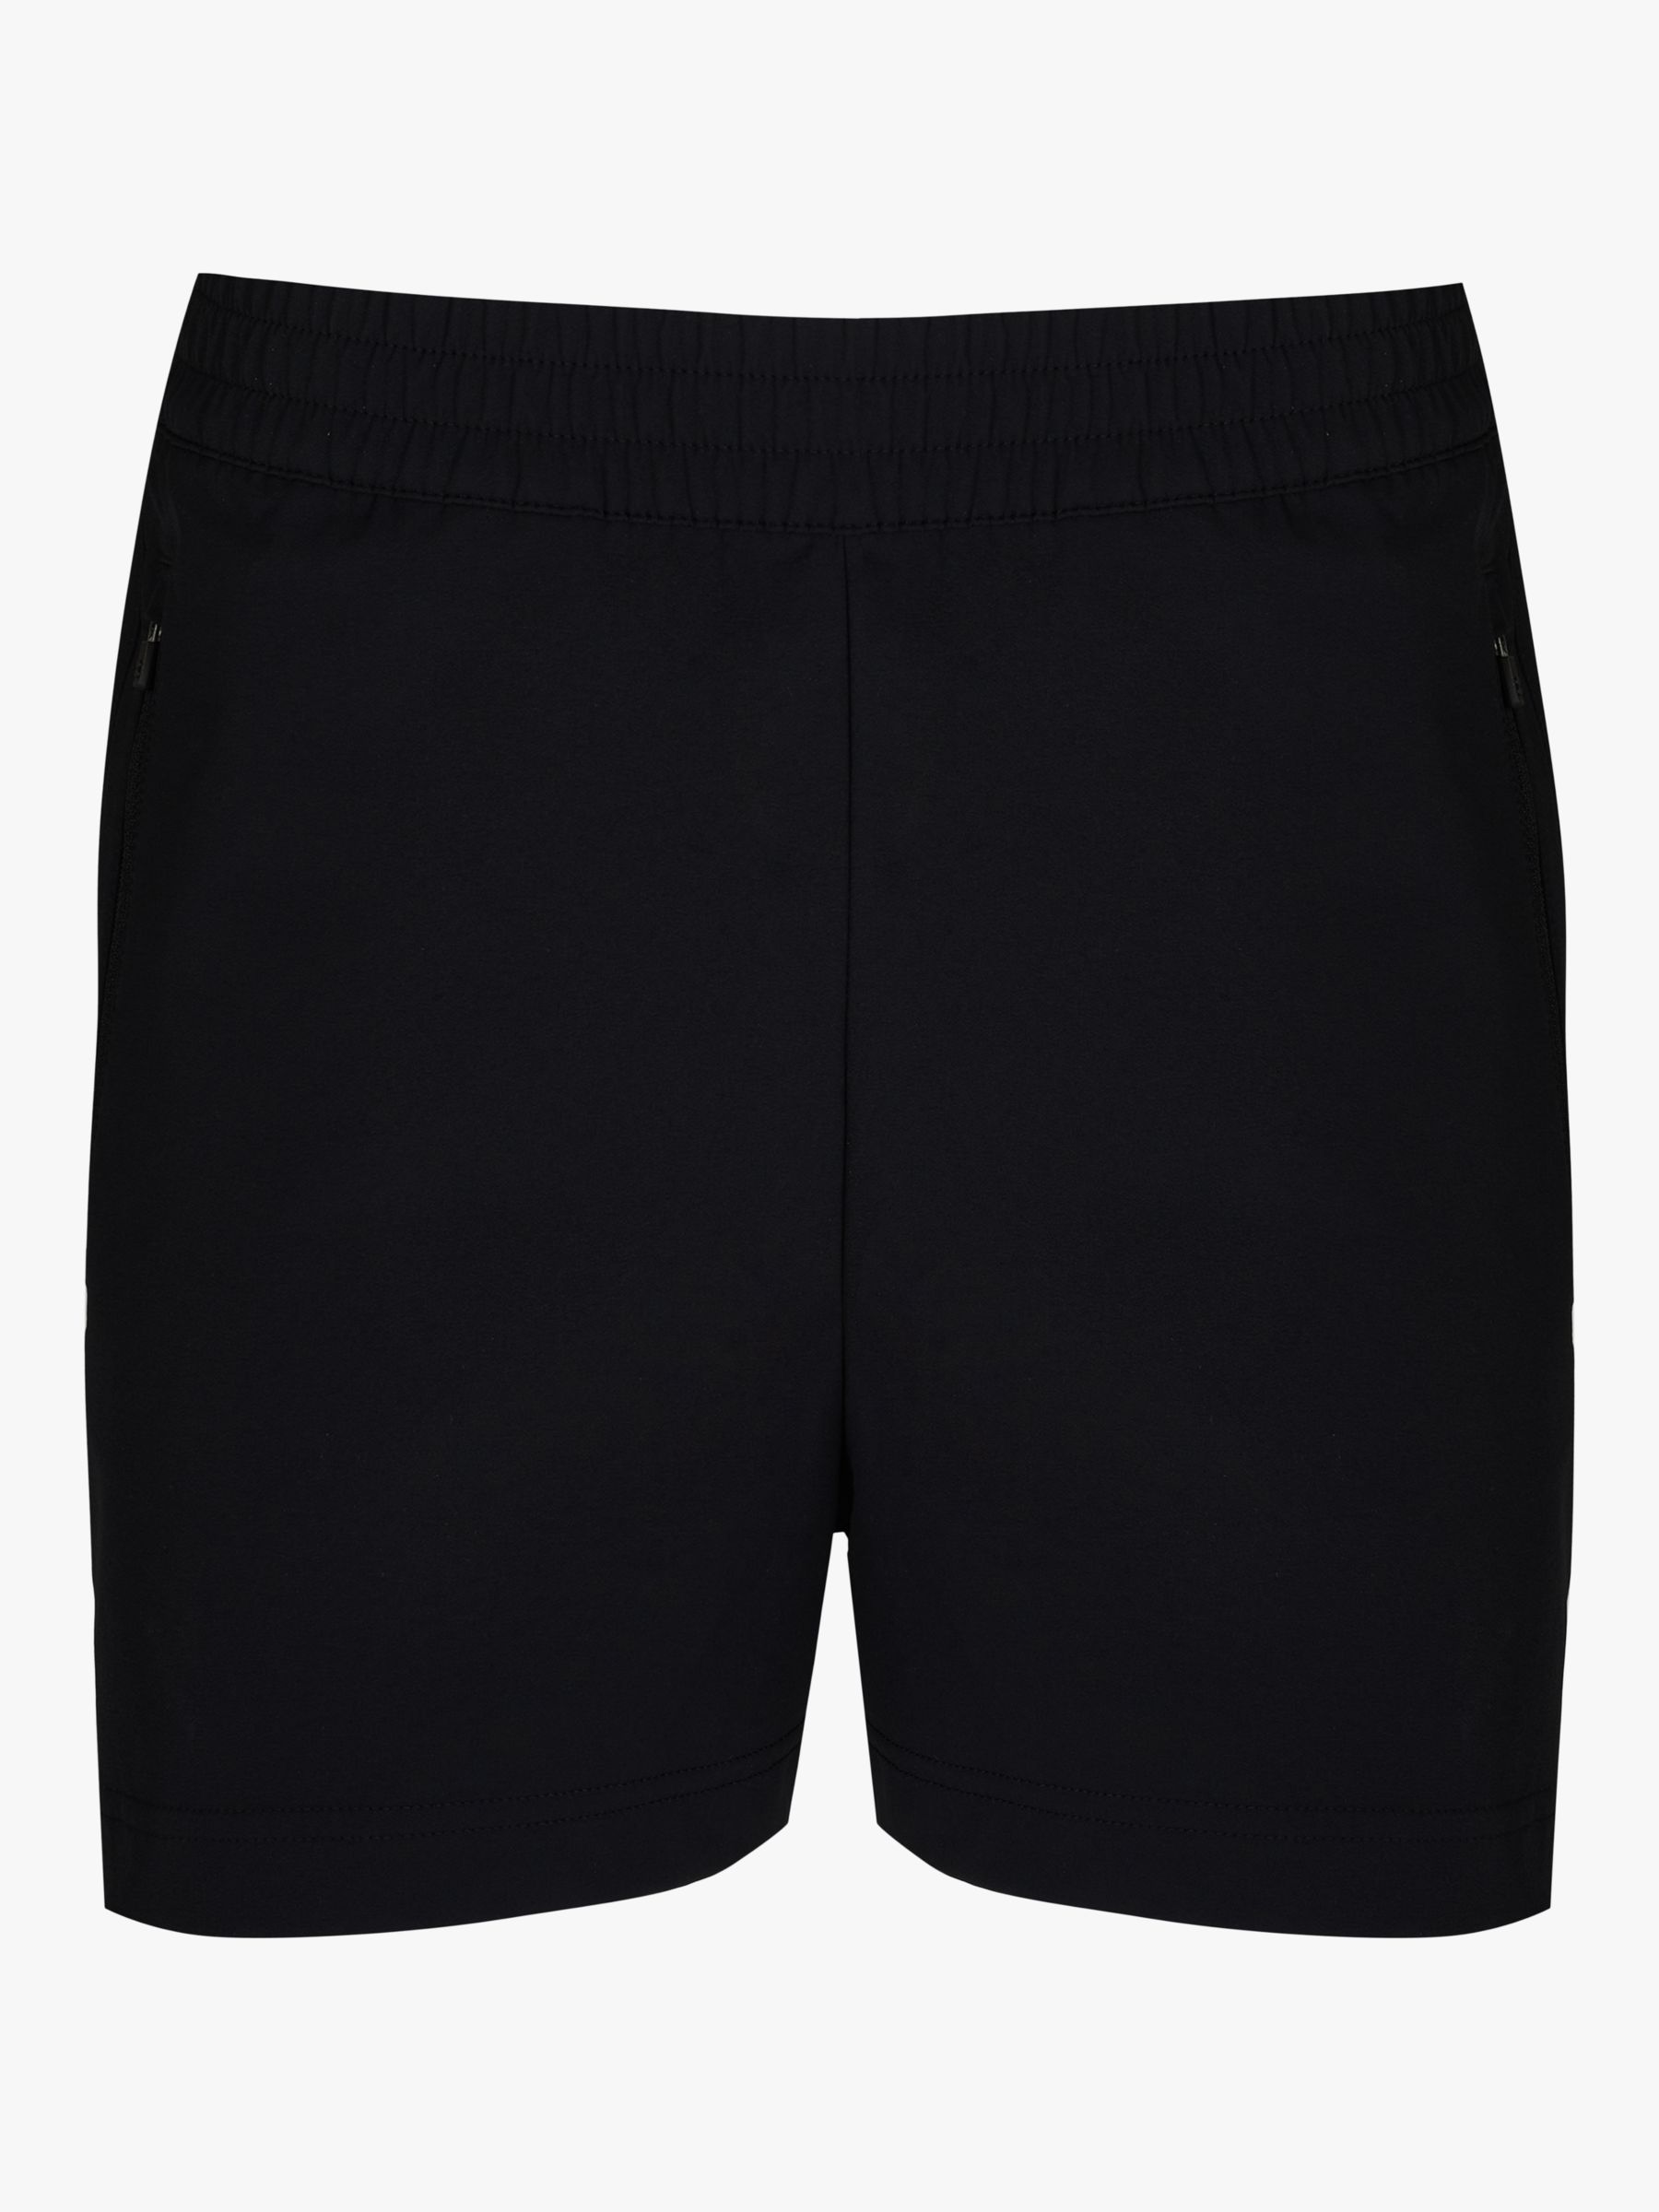 Sweaty Betty Summit Shorts, Black, XS